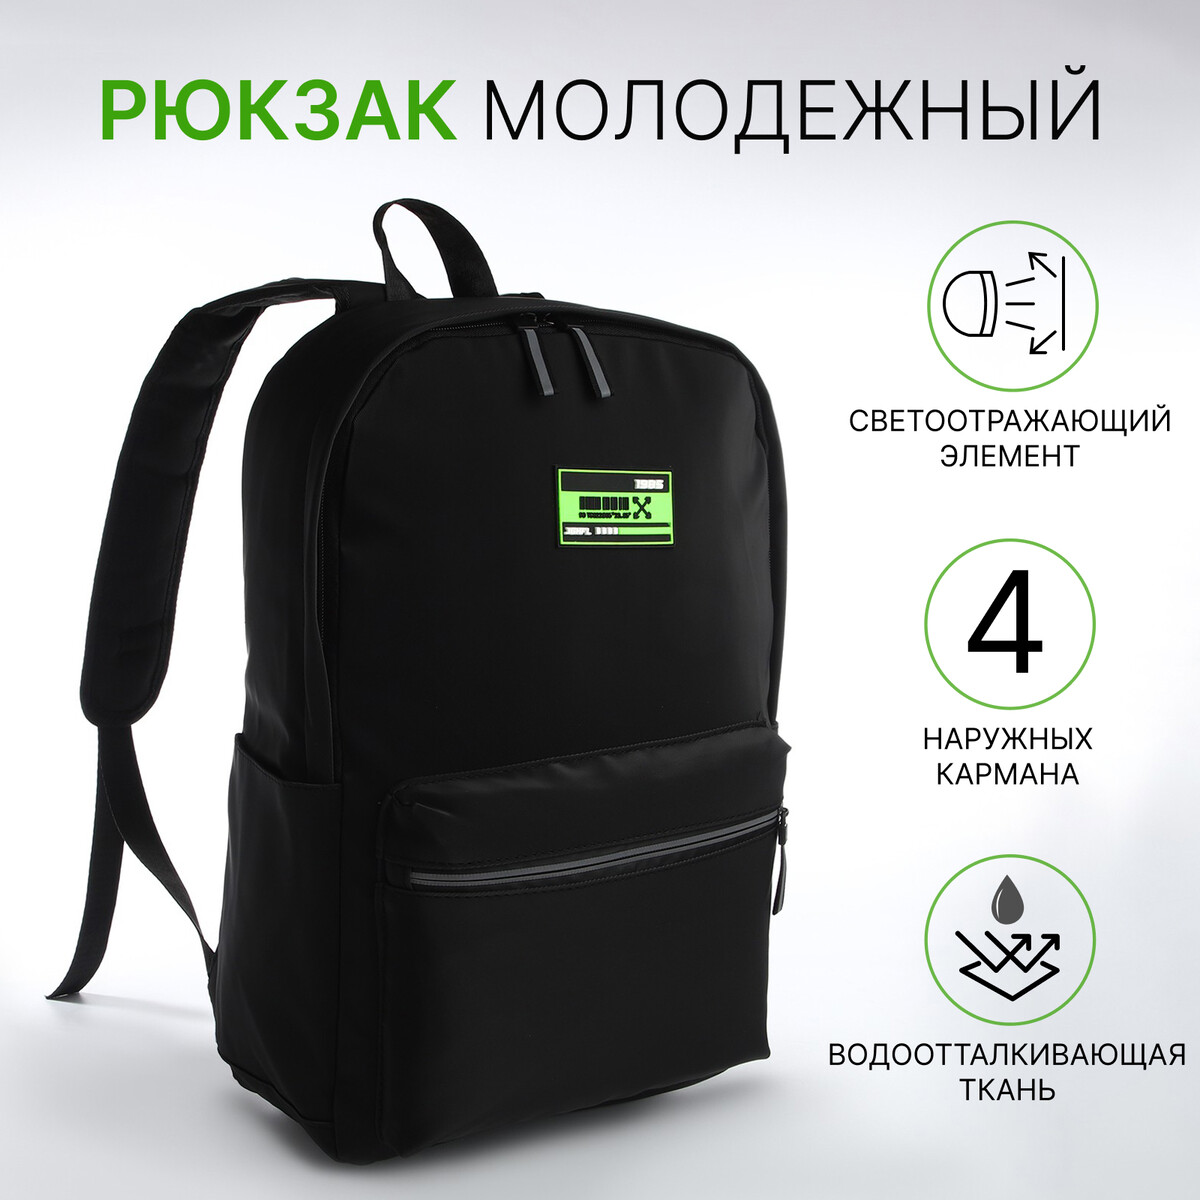 Рюкзак молодежный из текстиля на молнии, 2 кармана, цвет черный/зеленый рюкзак школьный из текстиля на молнии 3 кармана зеленый